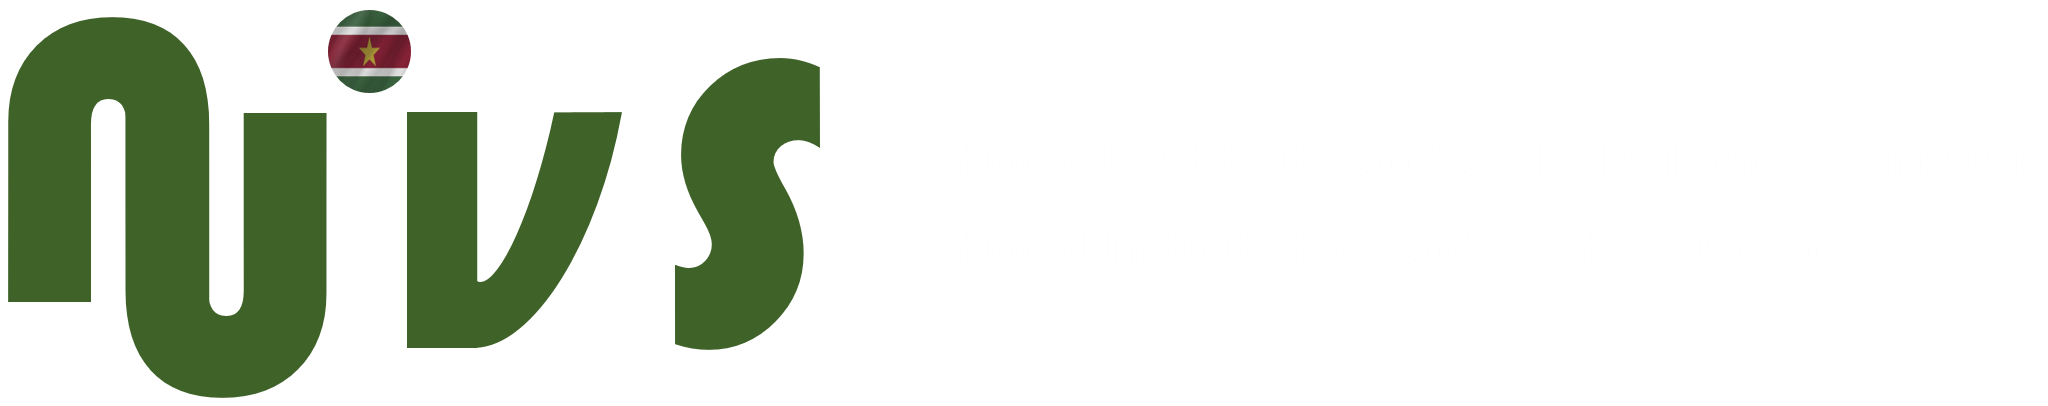 NIVS – Nationaal Instituut voor Voedselveiligheid Suriname